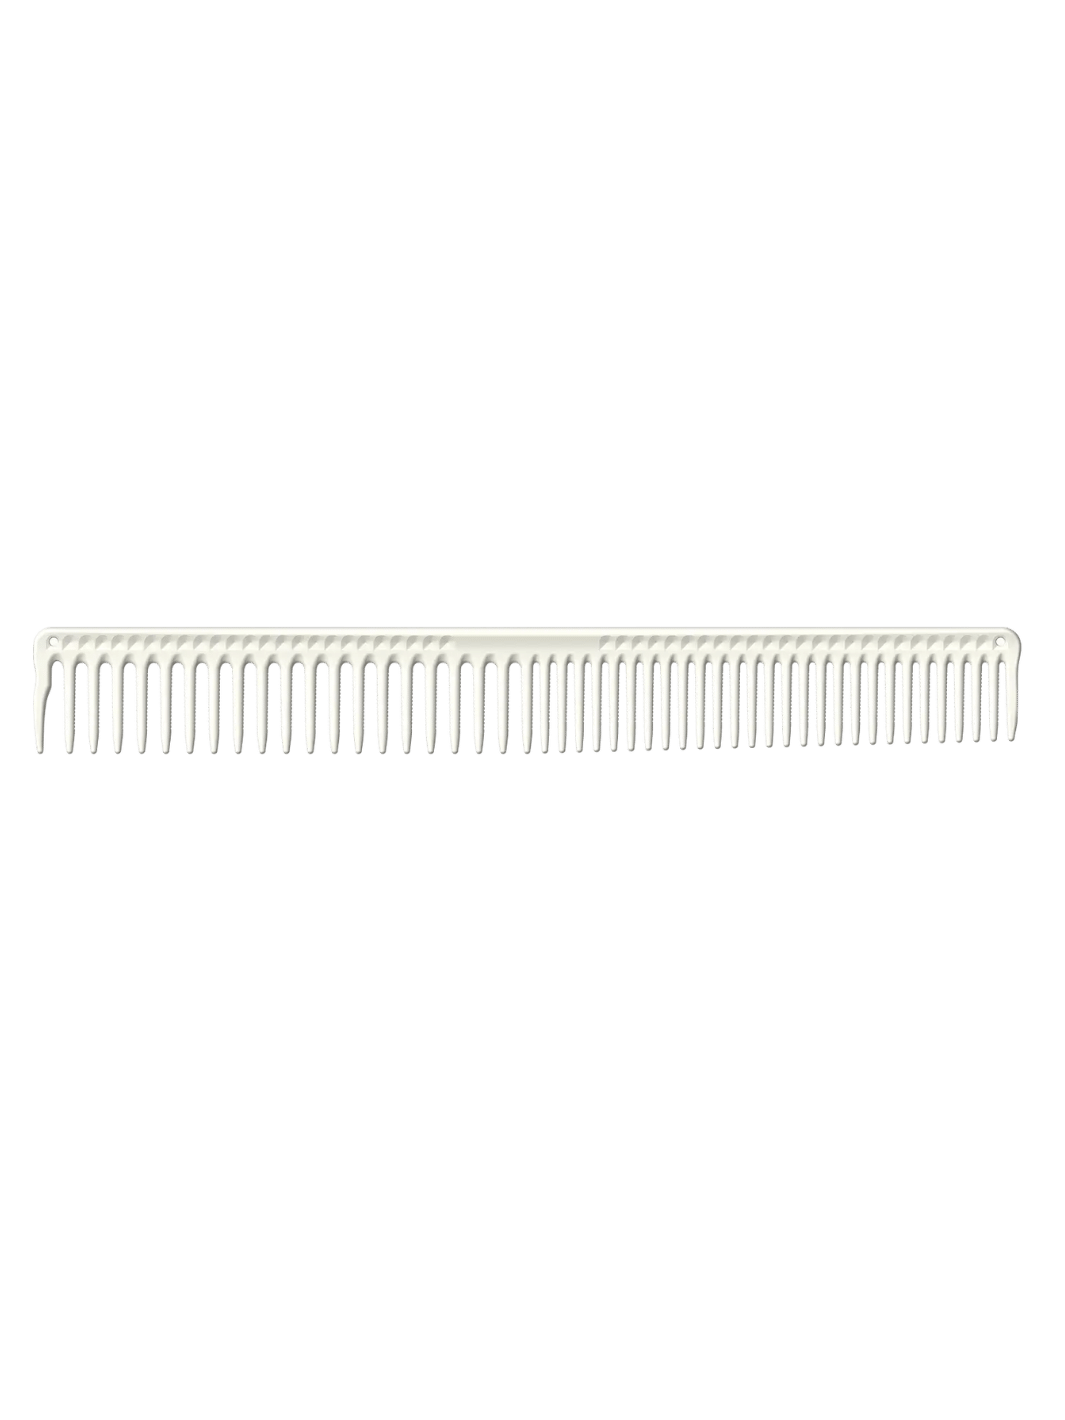 JRL J306 Haarschneidekamm 9" mit langen runden Zähnen in Weiß, erhältlich bei Phullcutz. Ideal für präzises Schneiden und professionelles Haarstyling. Hitzebeständig und chemisch beständig.